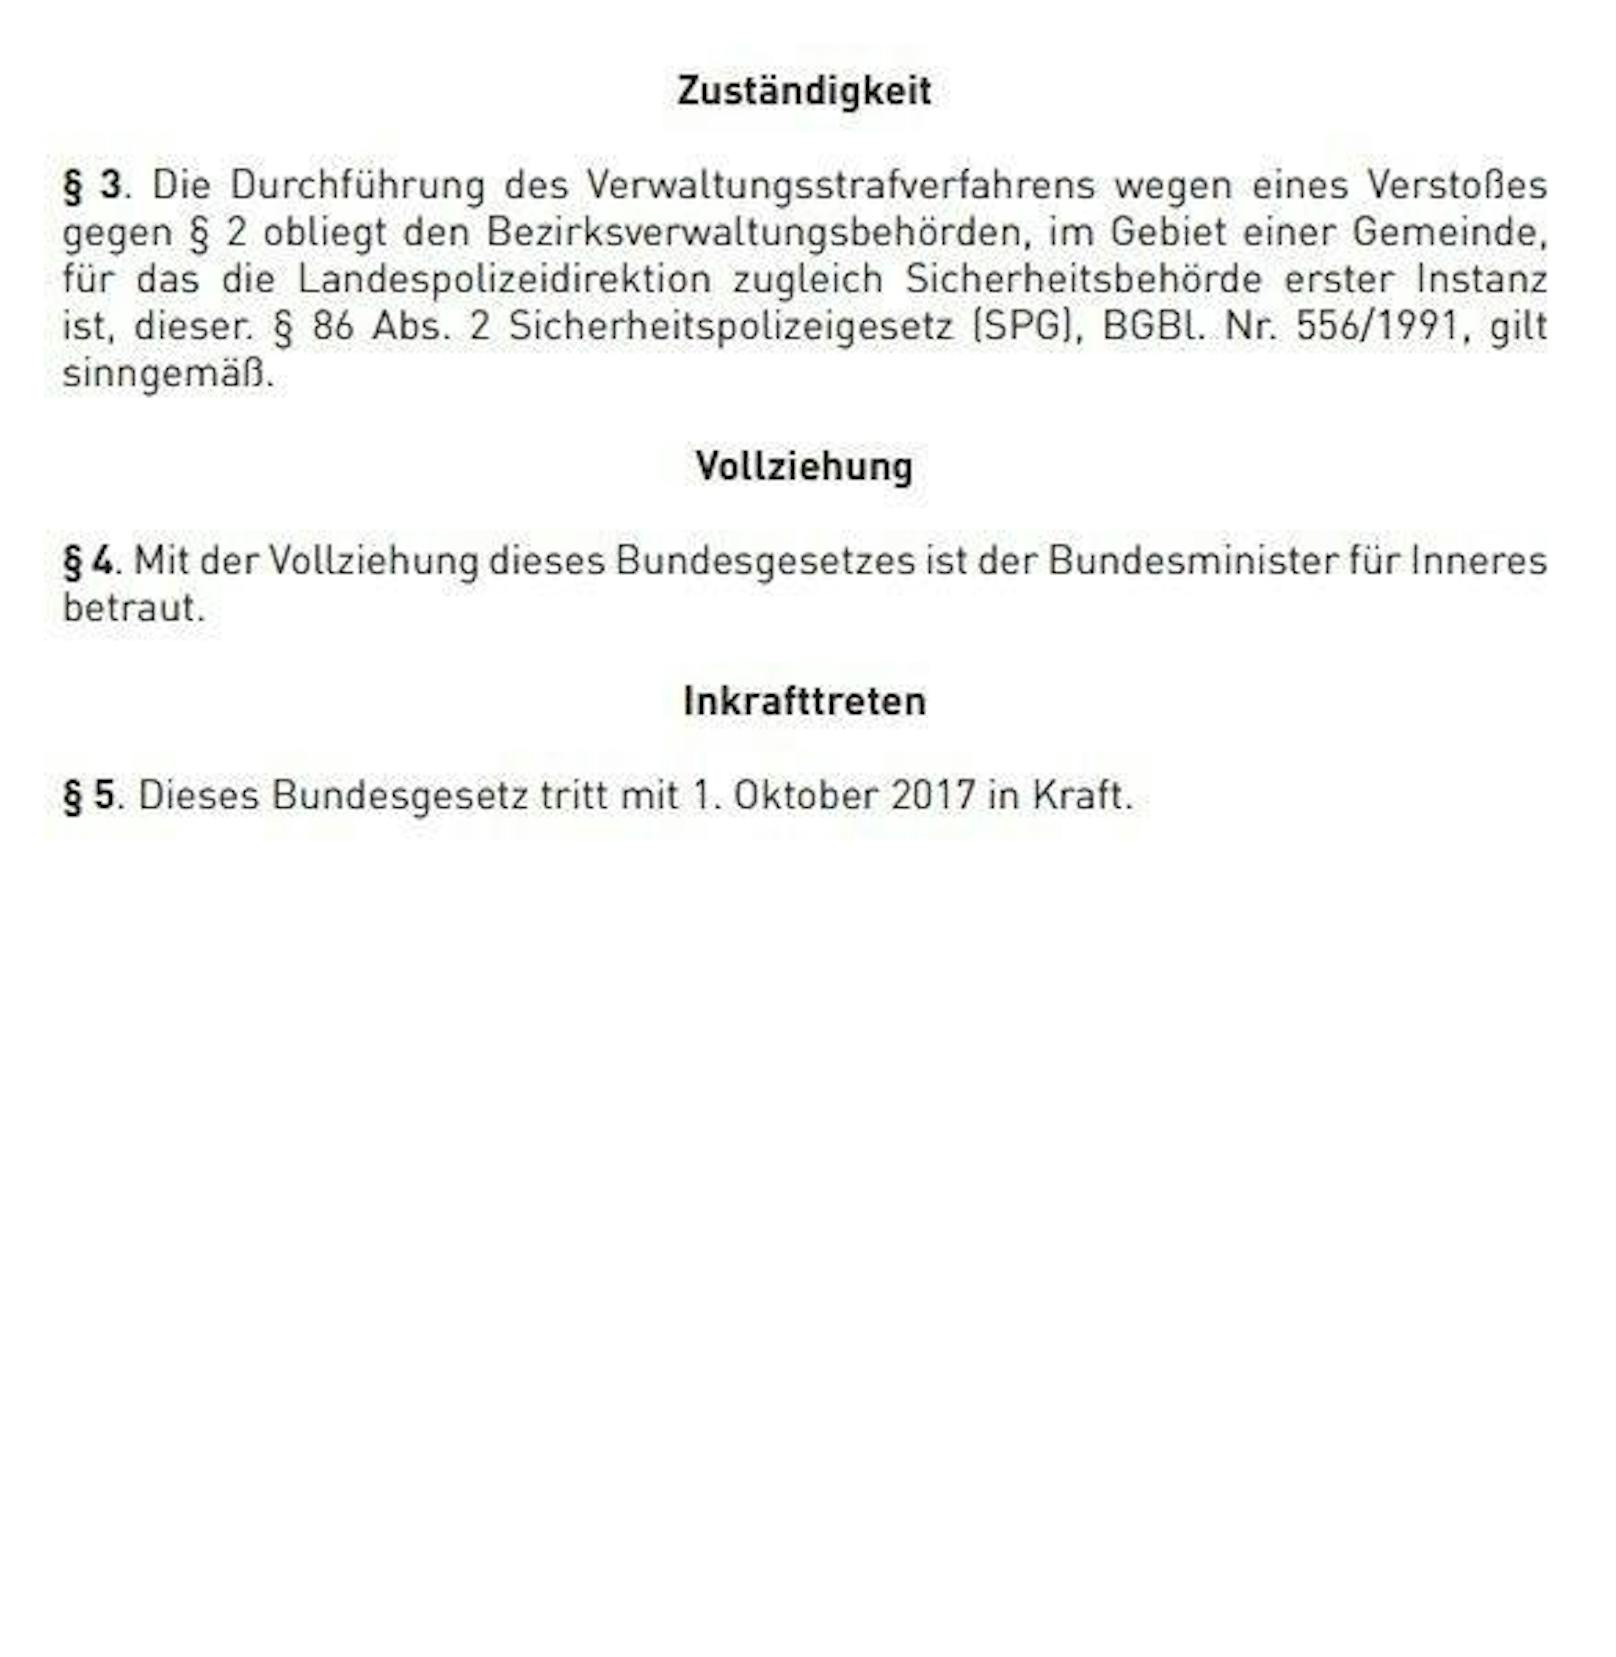 Das Burka-Verbot gilt ab 1. Oktober in Österreich: Hier das Gesetz im Wortlaut und alle Details dazu.